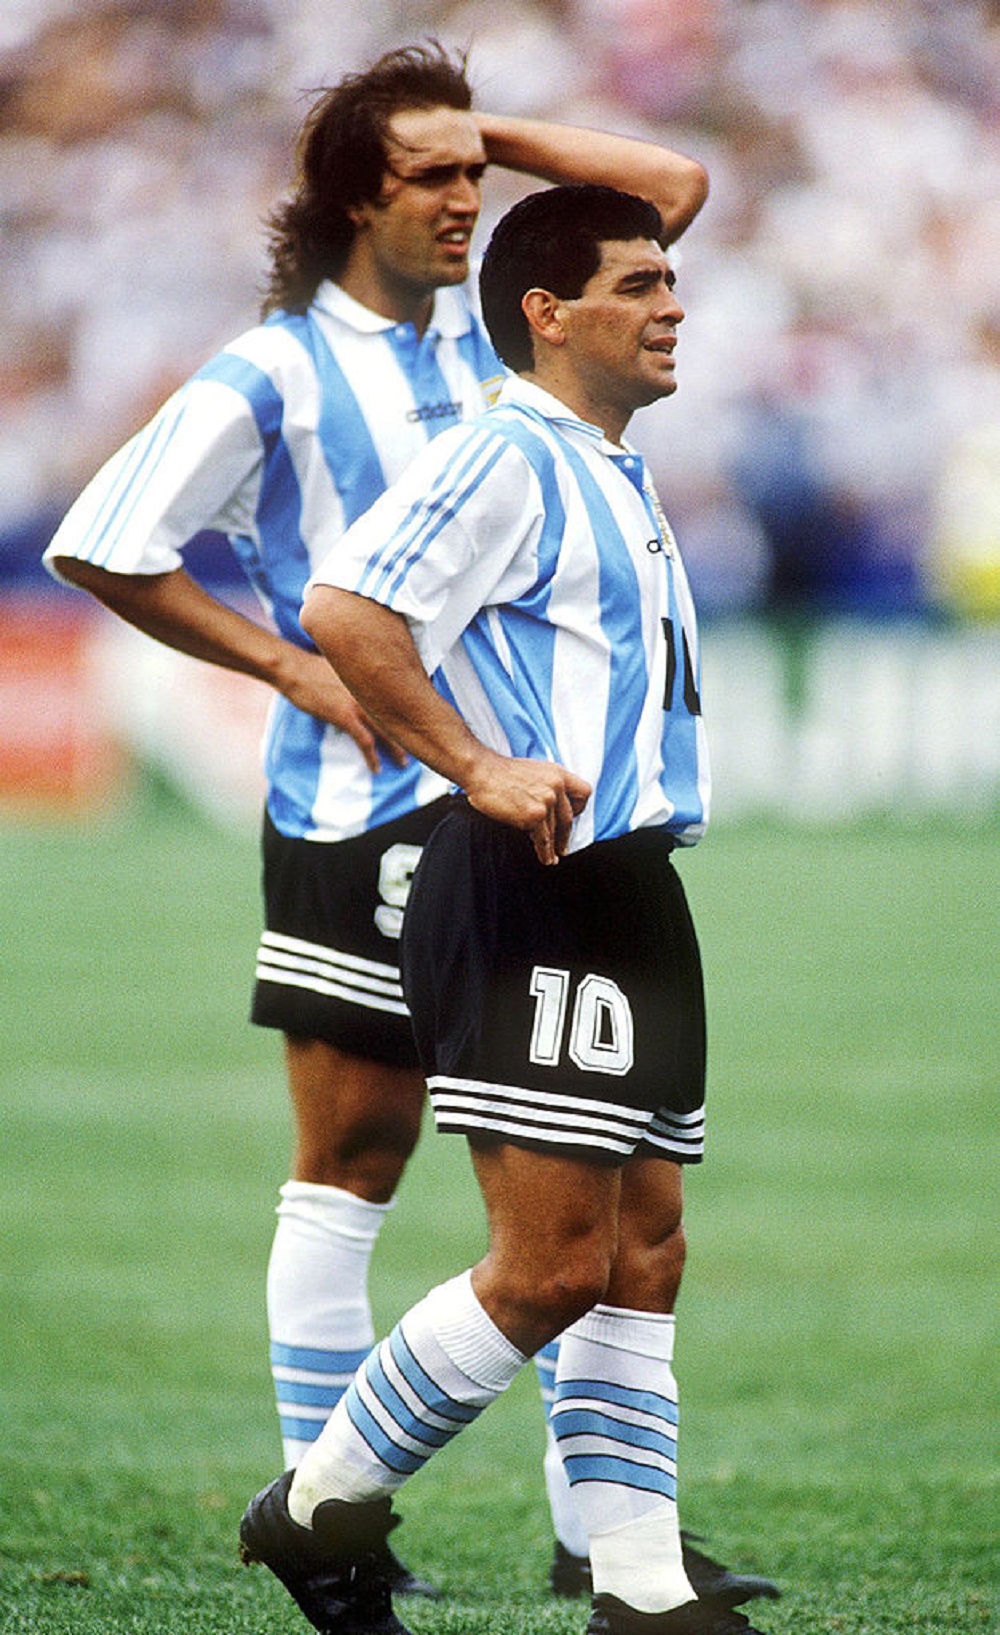 Fueron muchos los mitos que se tejieron alrededor del dopaje de Maradona. Incluso, se dijo que el presidente de la AFA, Julio Grondona, lo entregó a la FIFA / Getty Images.